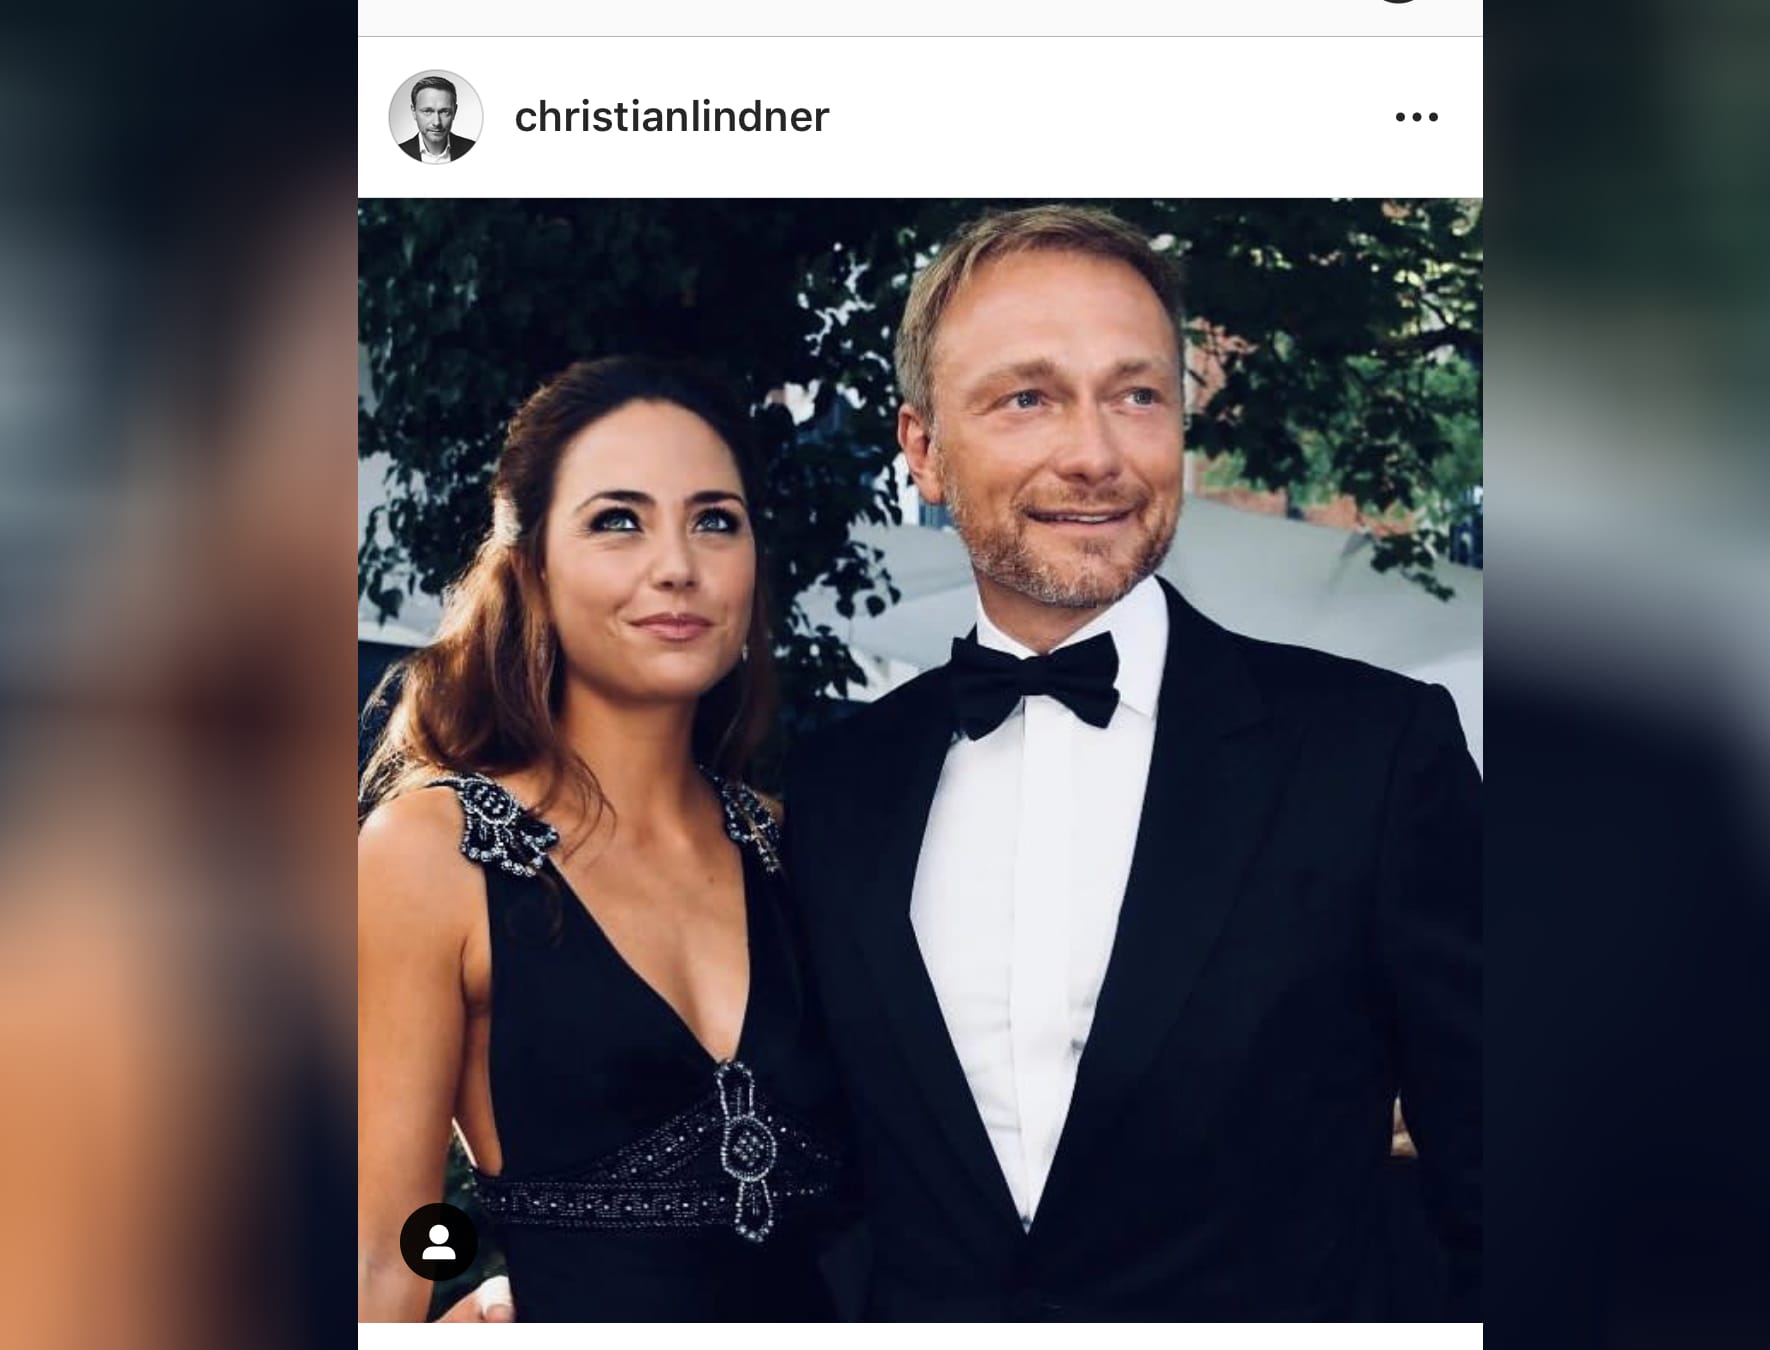 Einblicke ins Privatleben lieben die Nutzer des Netzwerks, sagt Instagramerin Mirjam Hornetz. FDP-Chef Christian Linder postete zum Valentinstag ein Foto mit seiner neuen Freundin. Das ist Top.